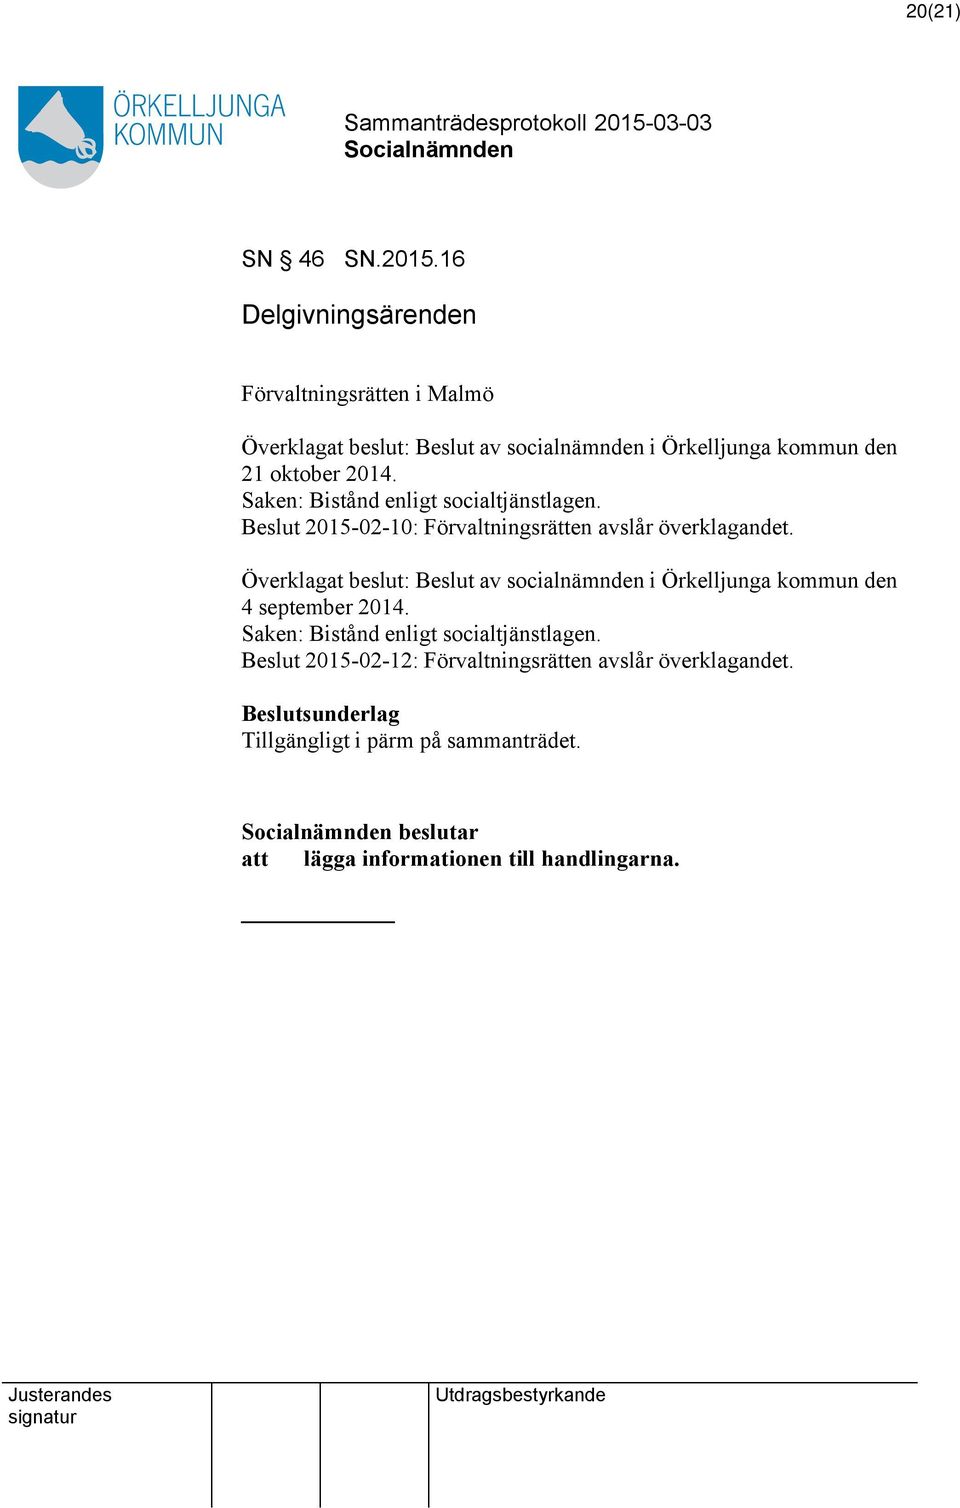 Saken: Bistånd enligt socialtjänstlagen. Beslut 2015-02-10: Förvaltningsrätten avslår överklagandet.